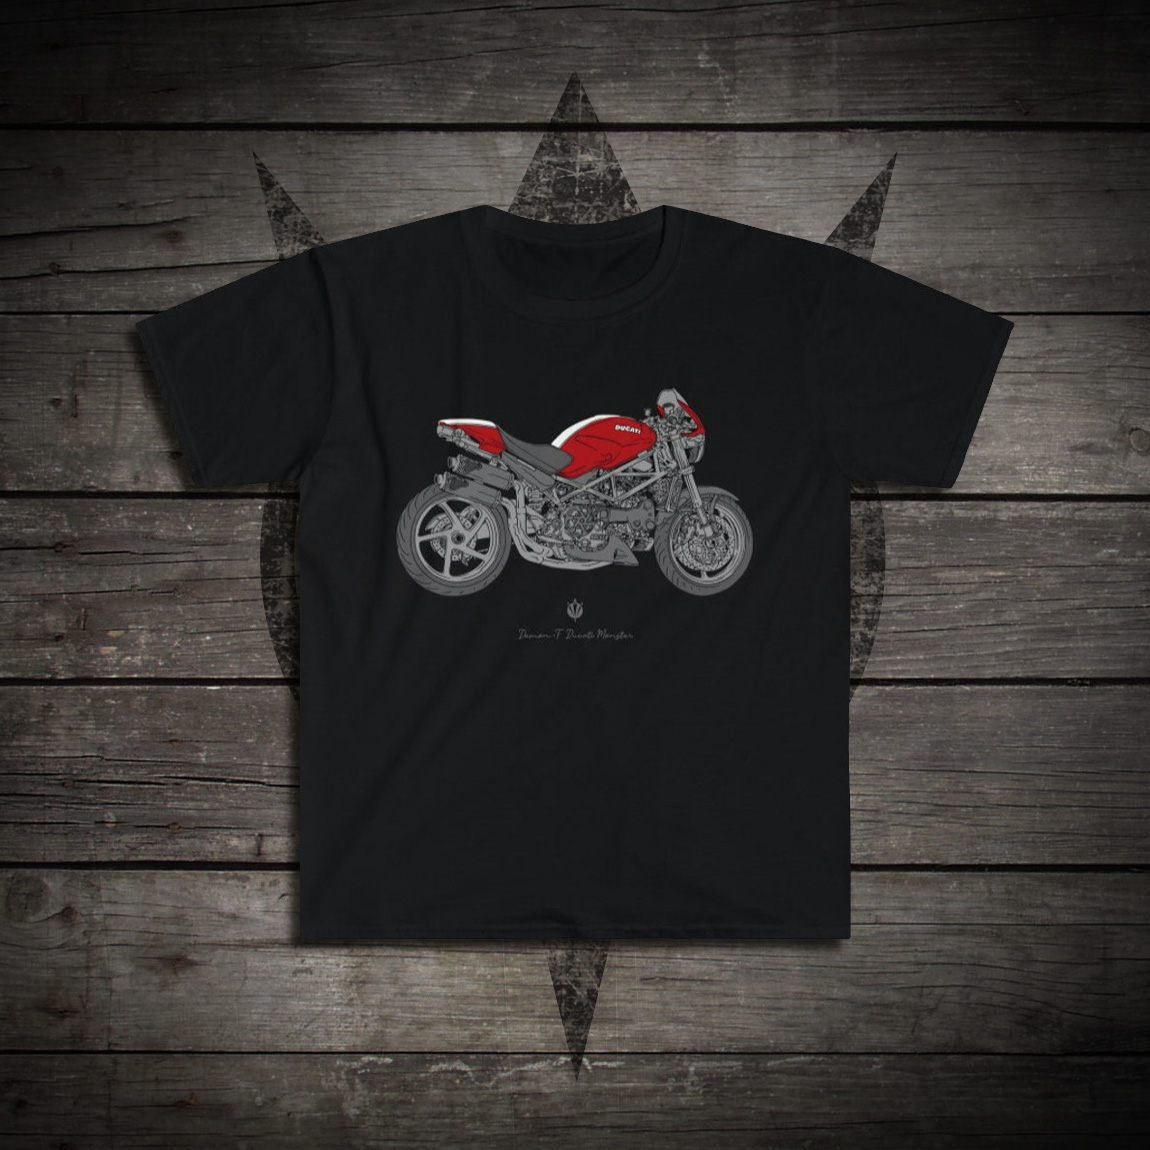 01-Ducati-Monster-S4R-shirt.jpg